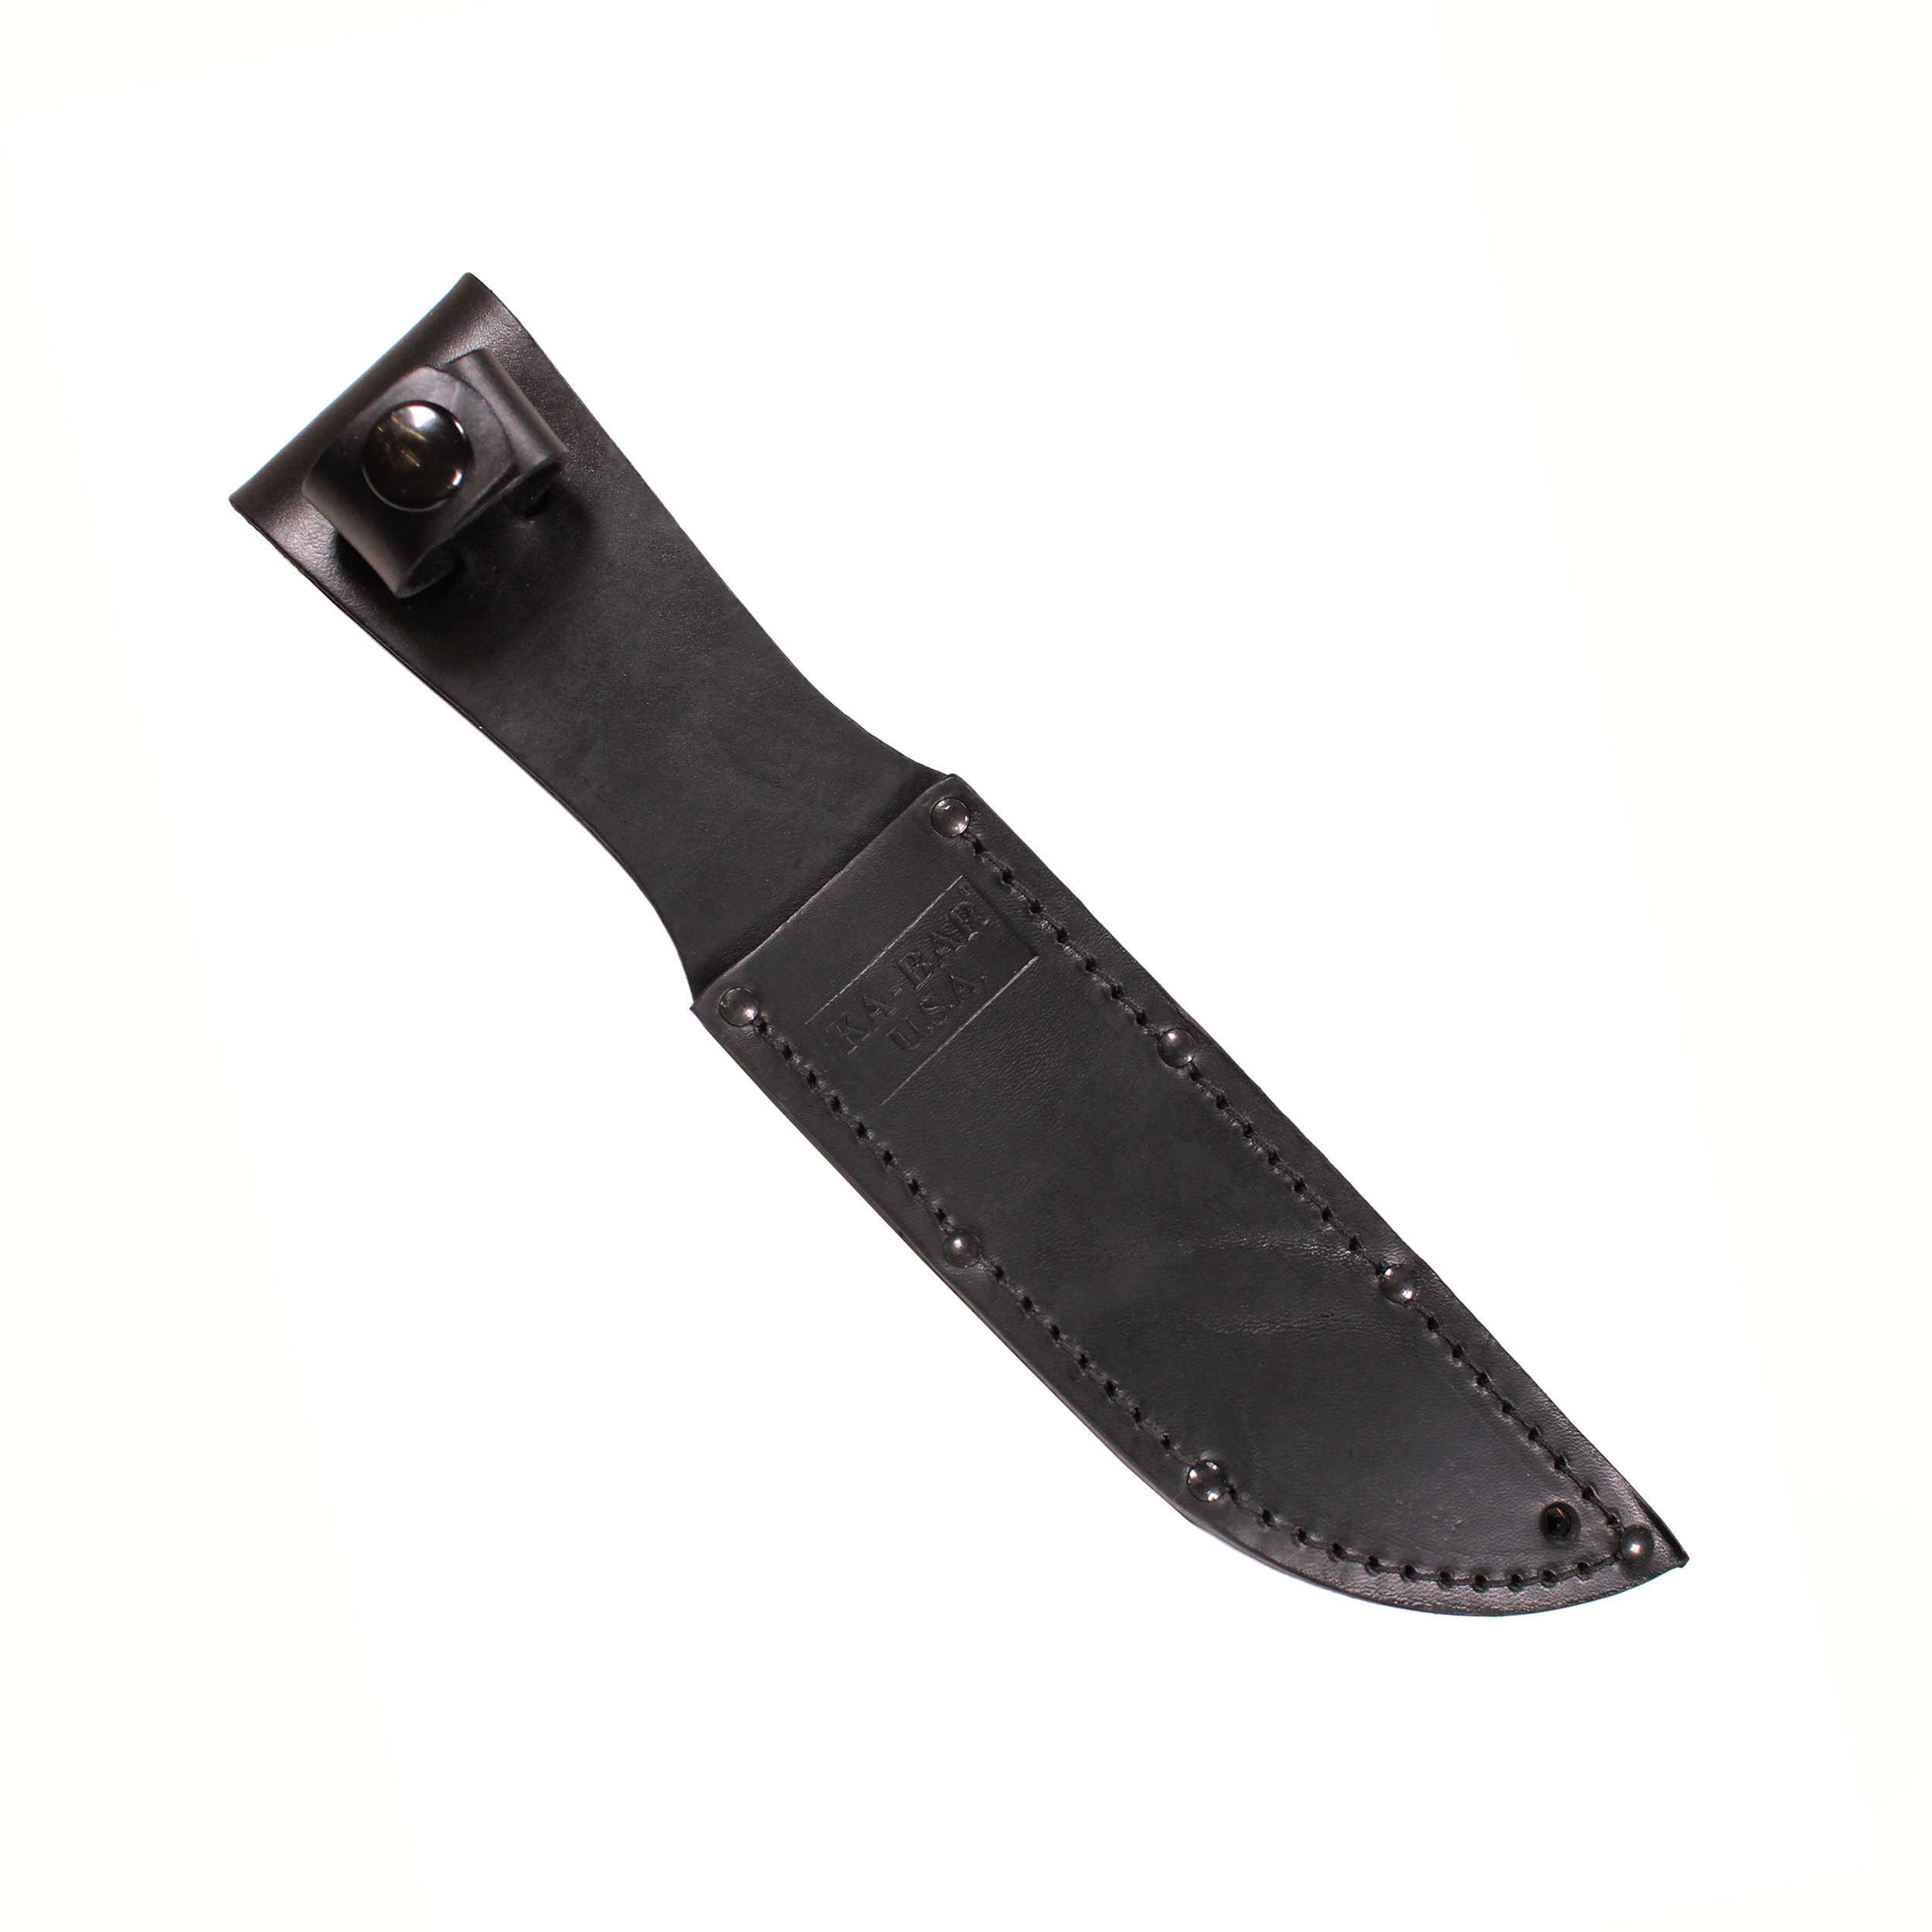 Ka-Bar Leather Sheath Black Md: 3-1256S-4